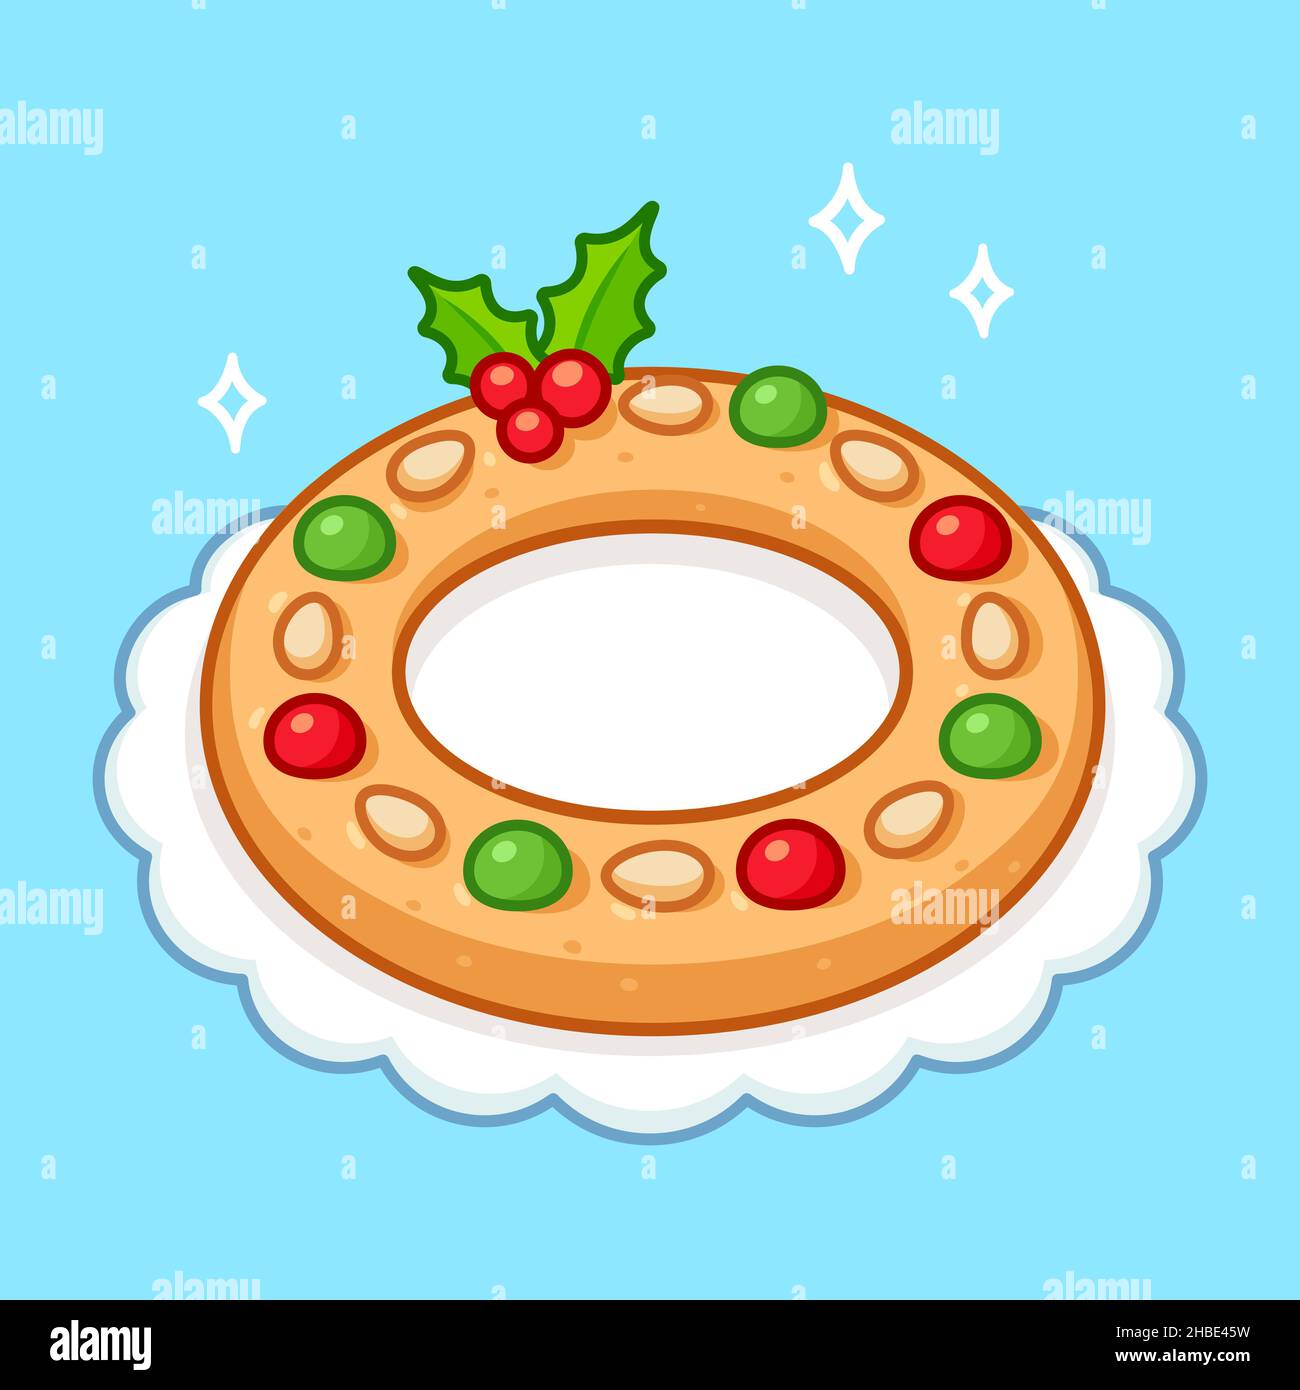 Kerstkrans Dutch Christmas Ring gâteau.Pâtisserie traditionnelle aux amandes pour couronne de Noël.Dessin animé, illustration vectorielle Illustration de Vecteur